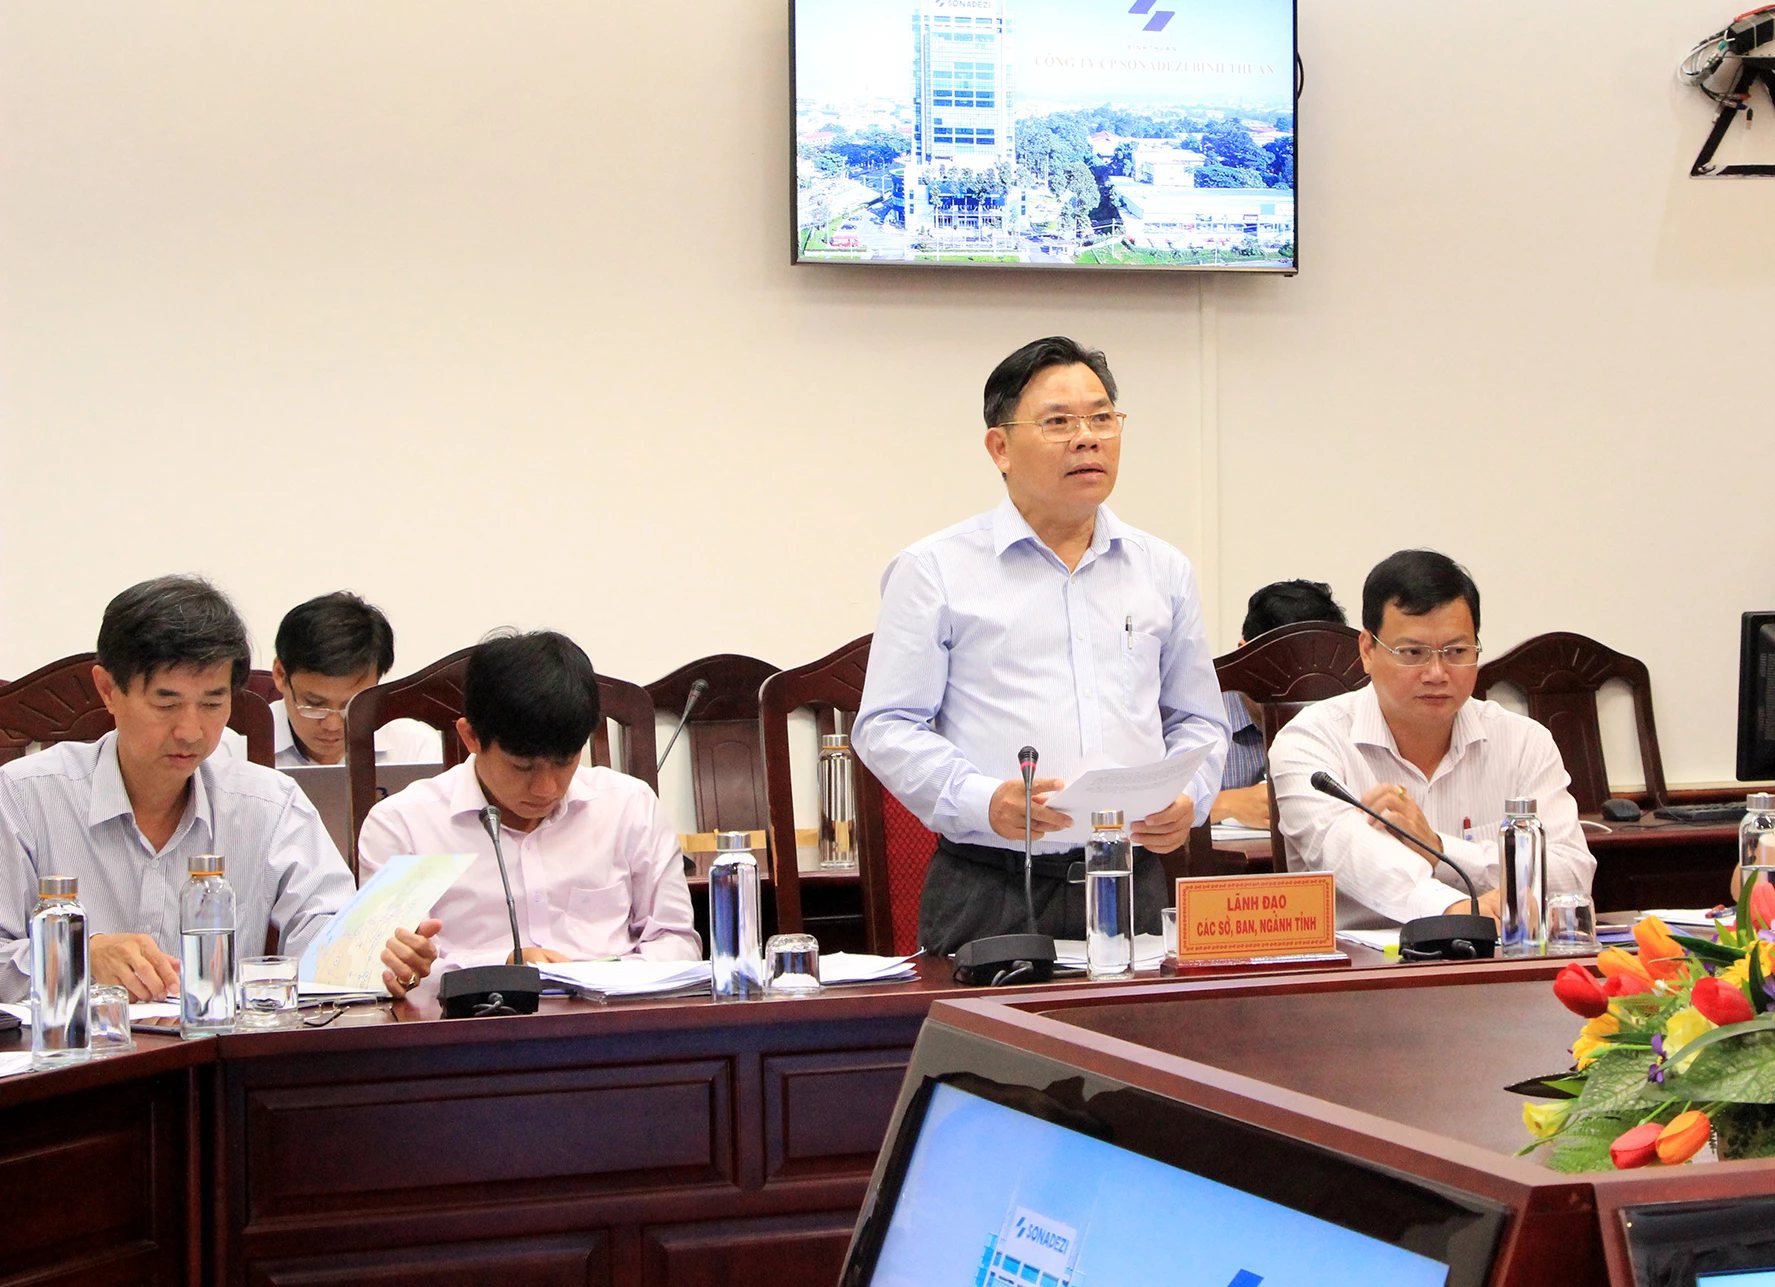 Ông Phùng Hữu Cư - Giám đốc Ban Quản lý các khu công nghiệp tỉnh Bình Thuận trao đổi nội dung ban hành Giấy chứng nhận đầu tư cho Công ty Cổ phần Sonadezi Bình Thuận